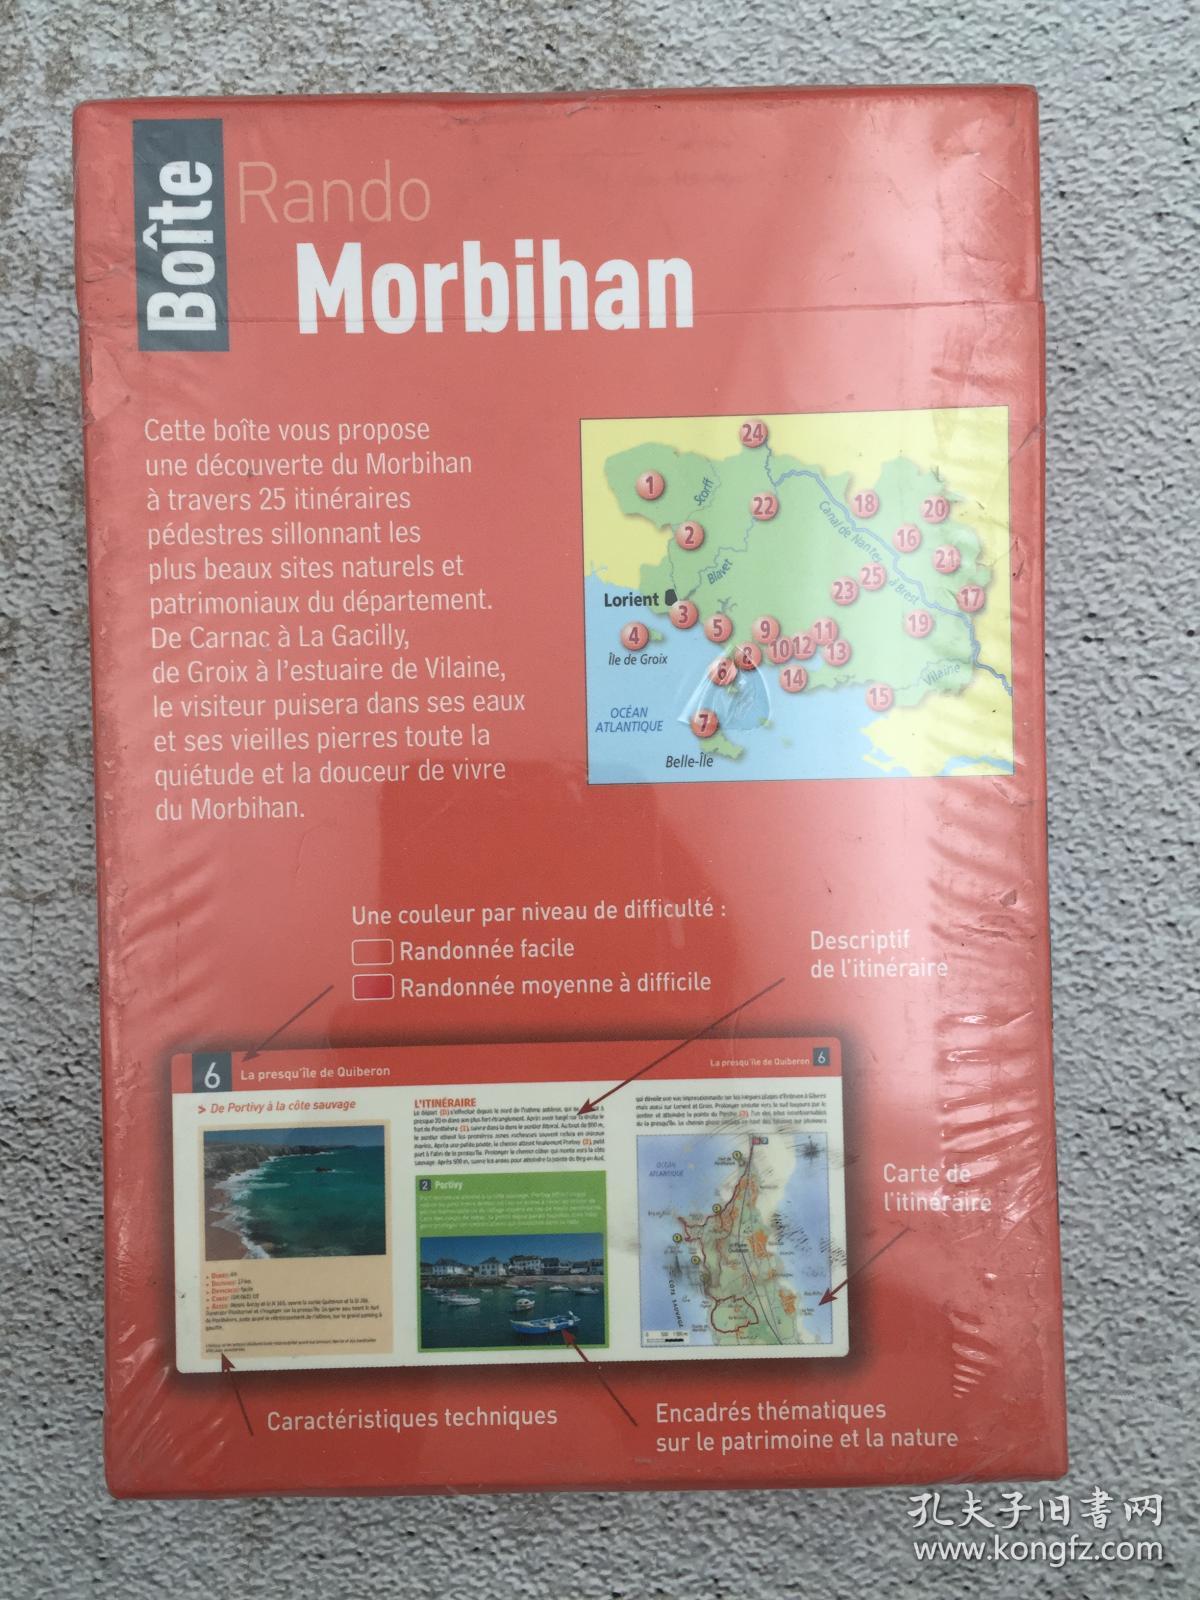 Fiches Rando Morbihan : 25 fiches rando pour découvrir les plus beaux sites du Morbihan法文